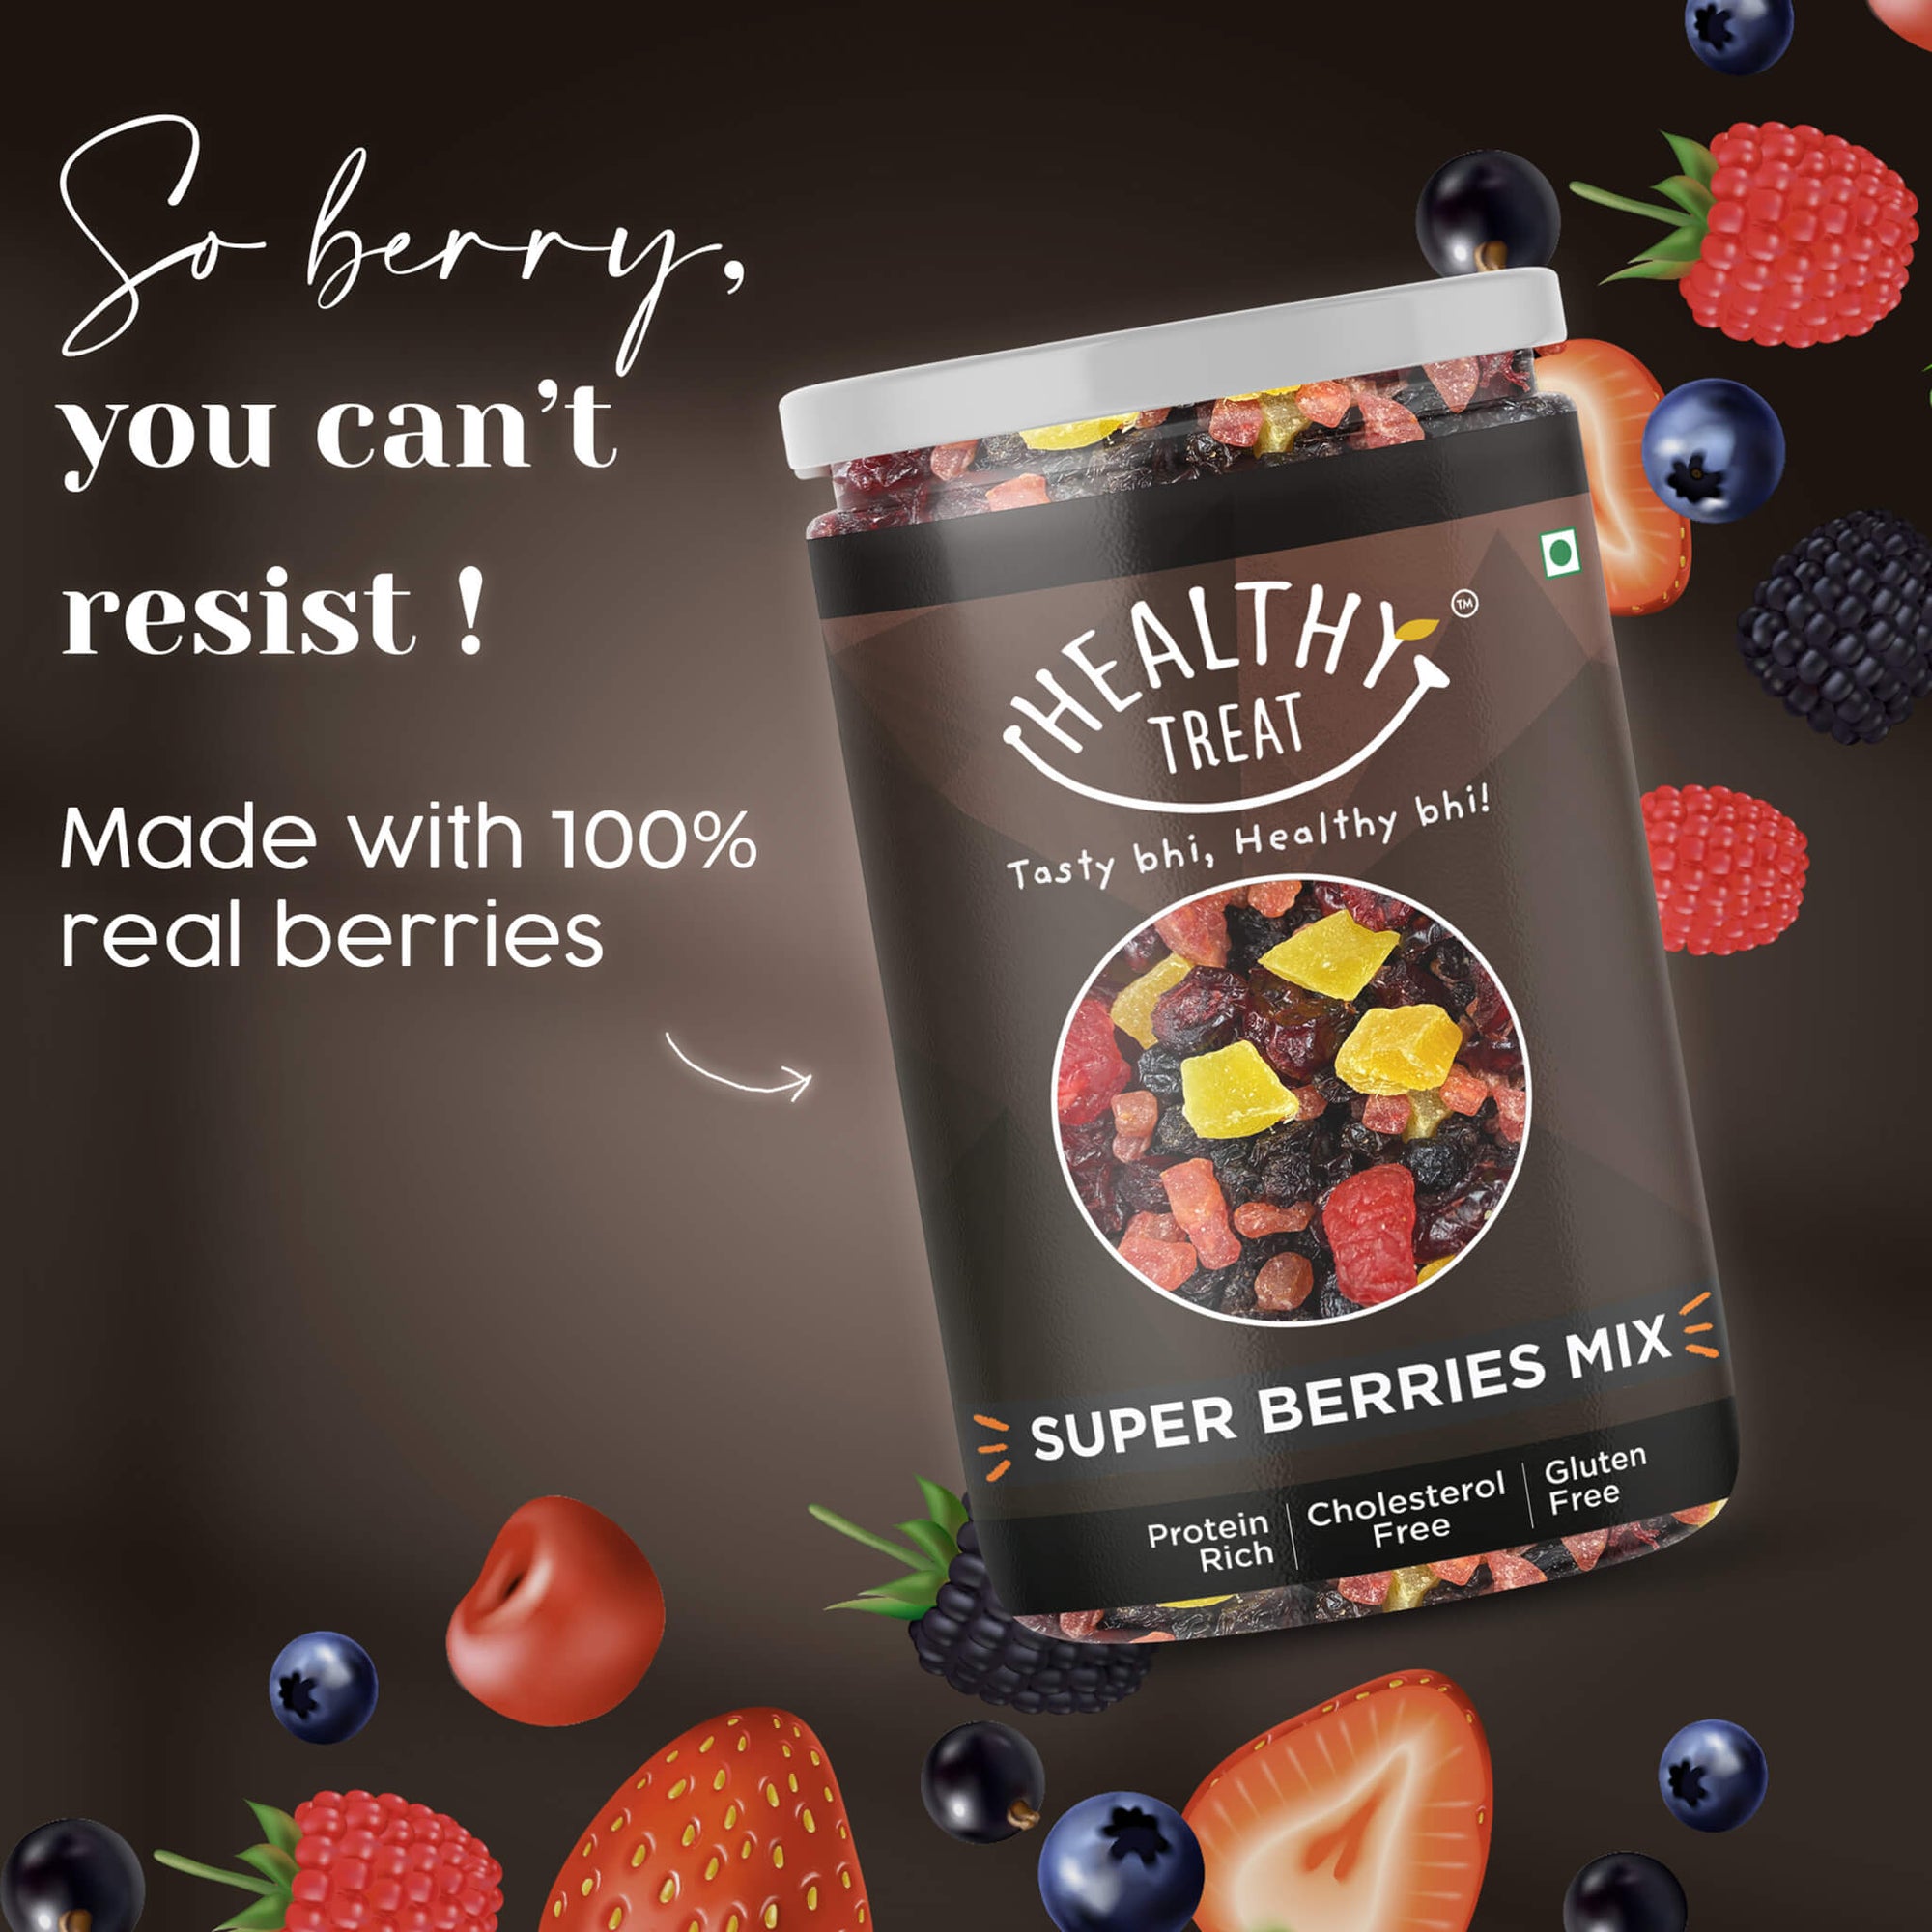 Super berries mix